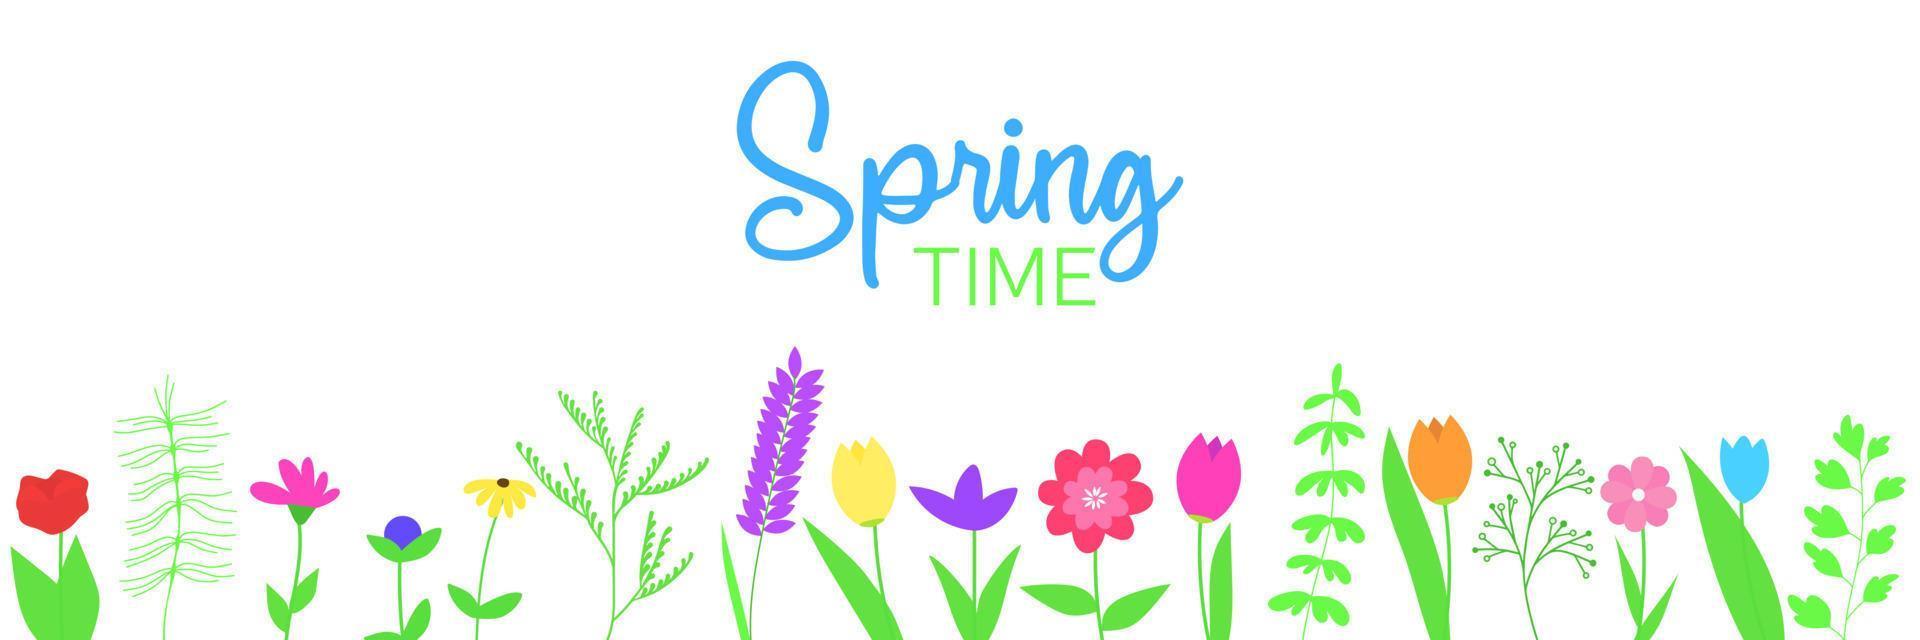 voorjaar banier met bloem en belettering tekst. vector illustratie.